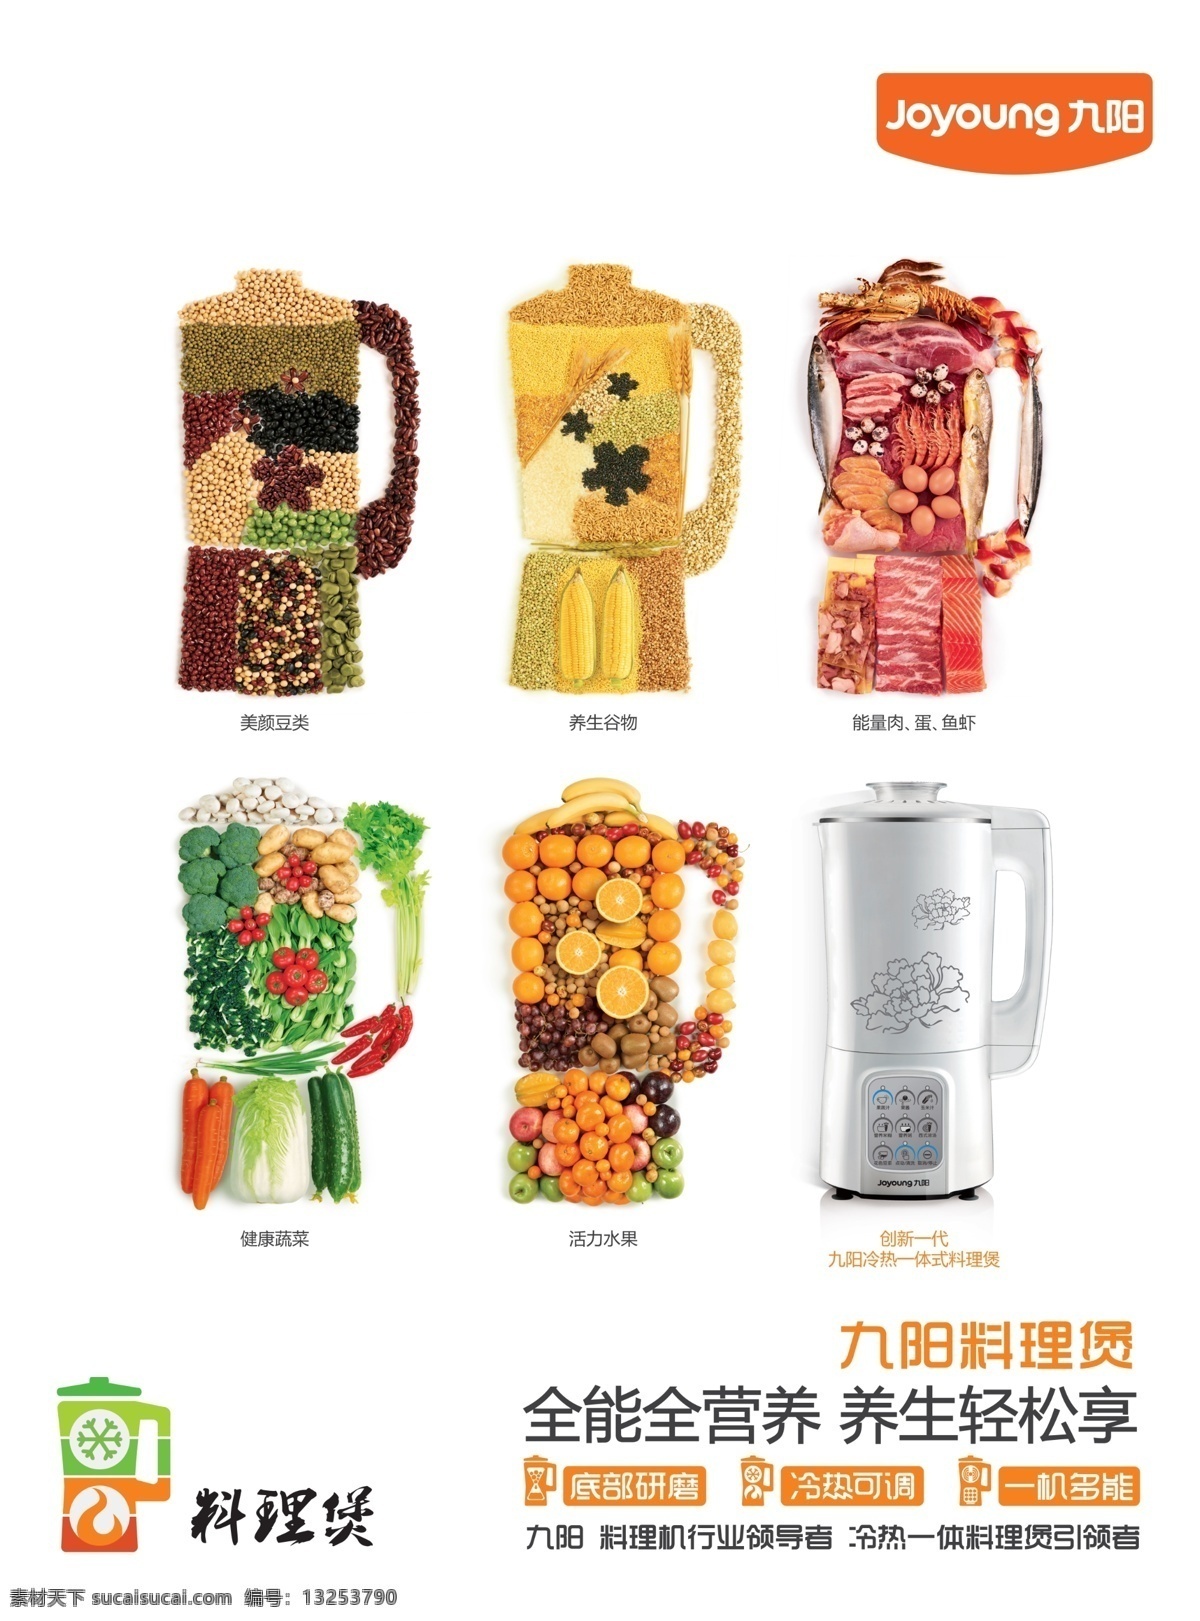 九阳 料理 料理机 料理煲 豆浆机 广告设计模板 源文件